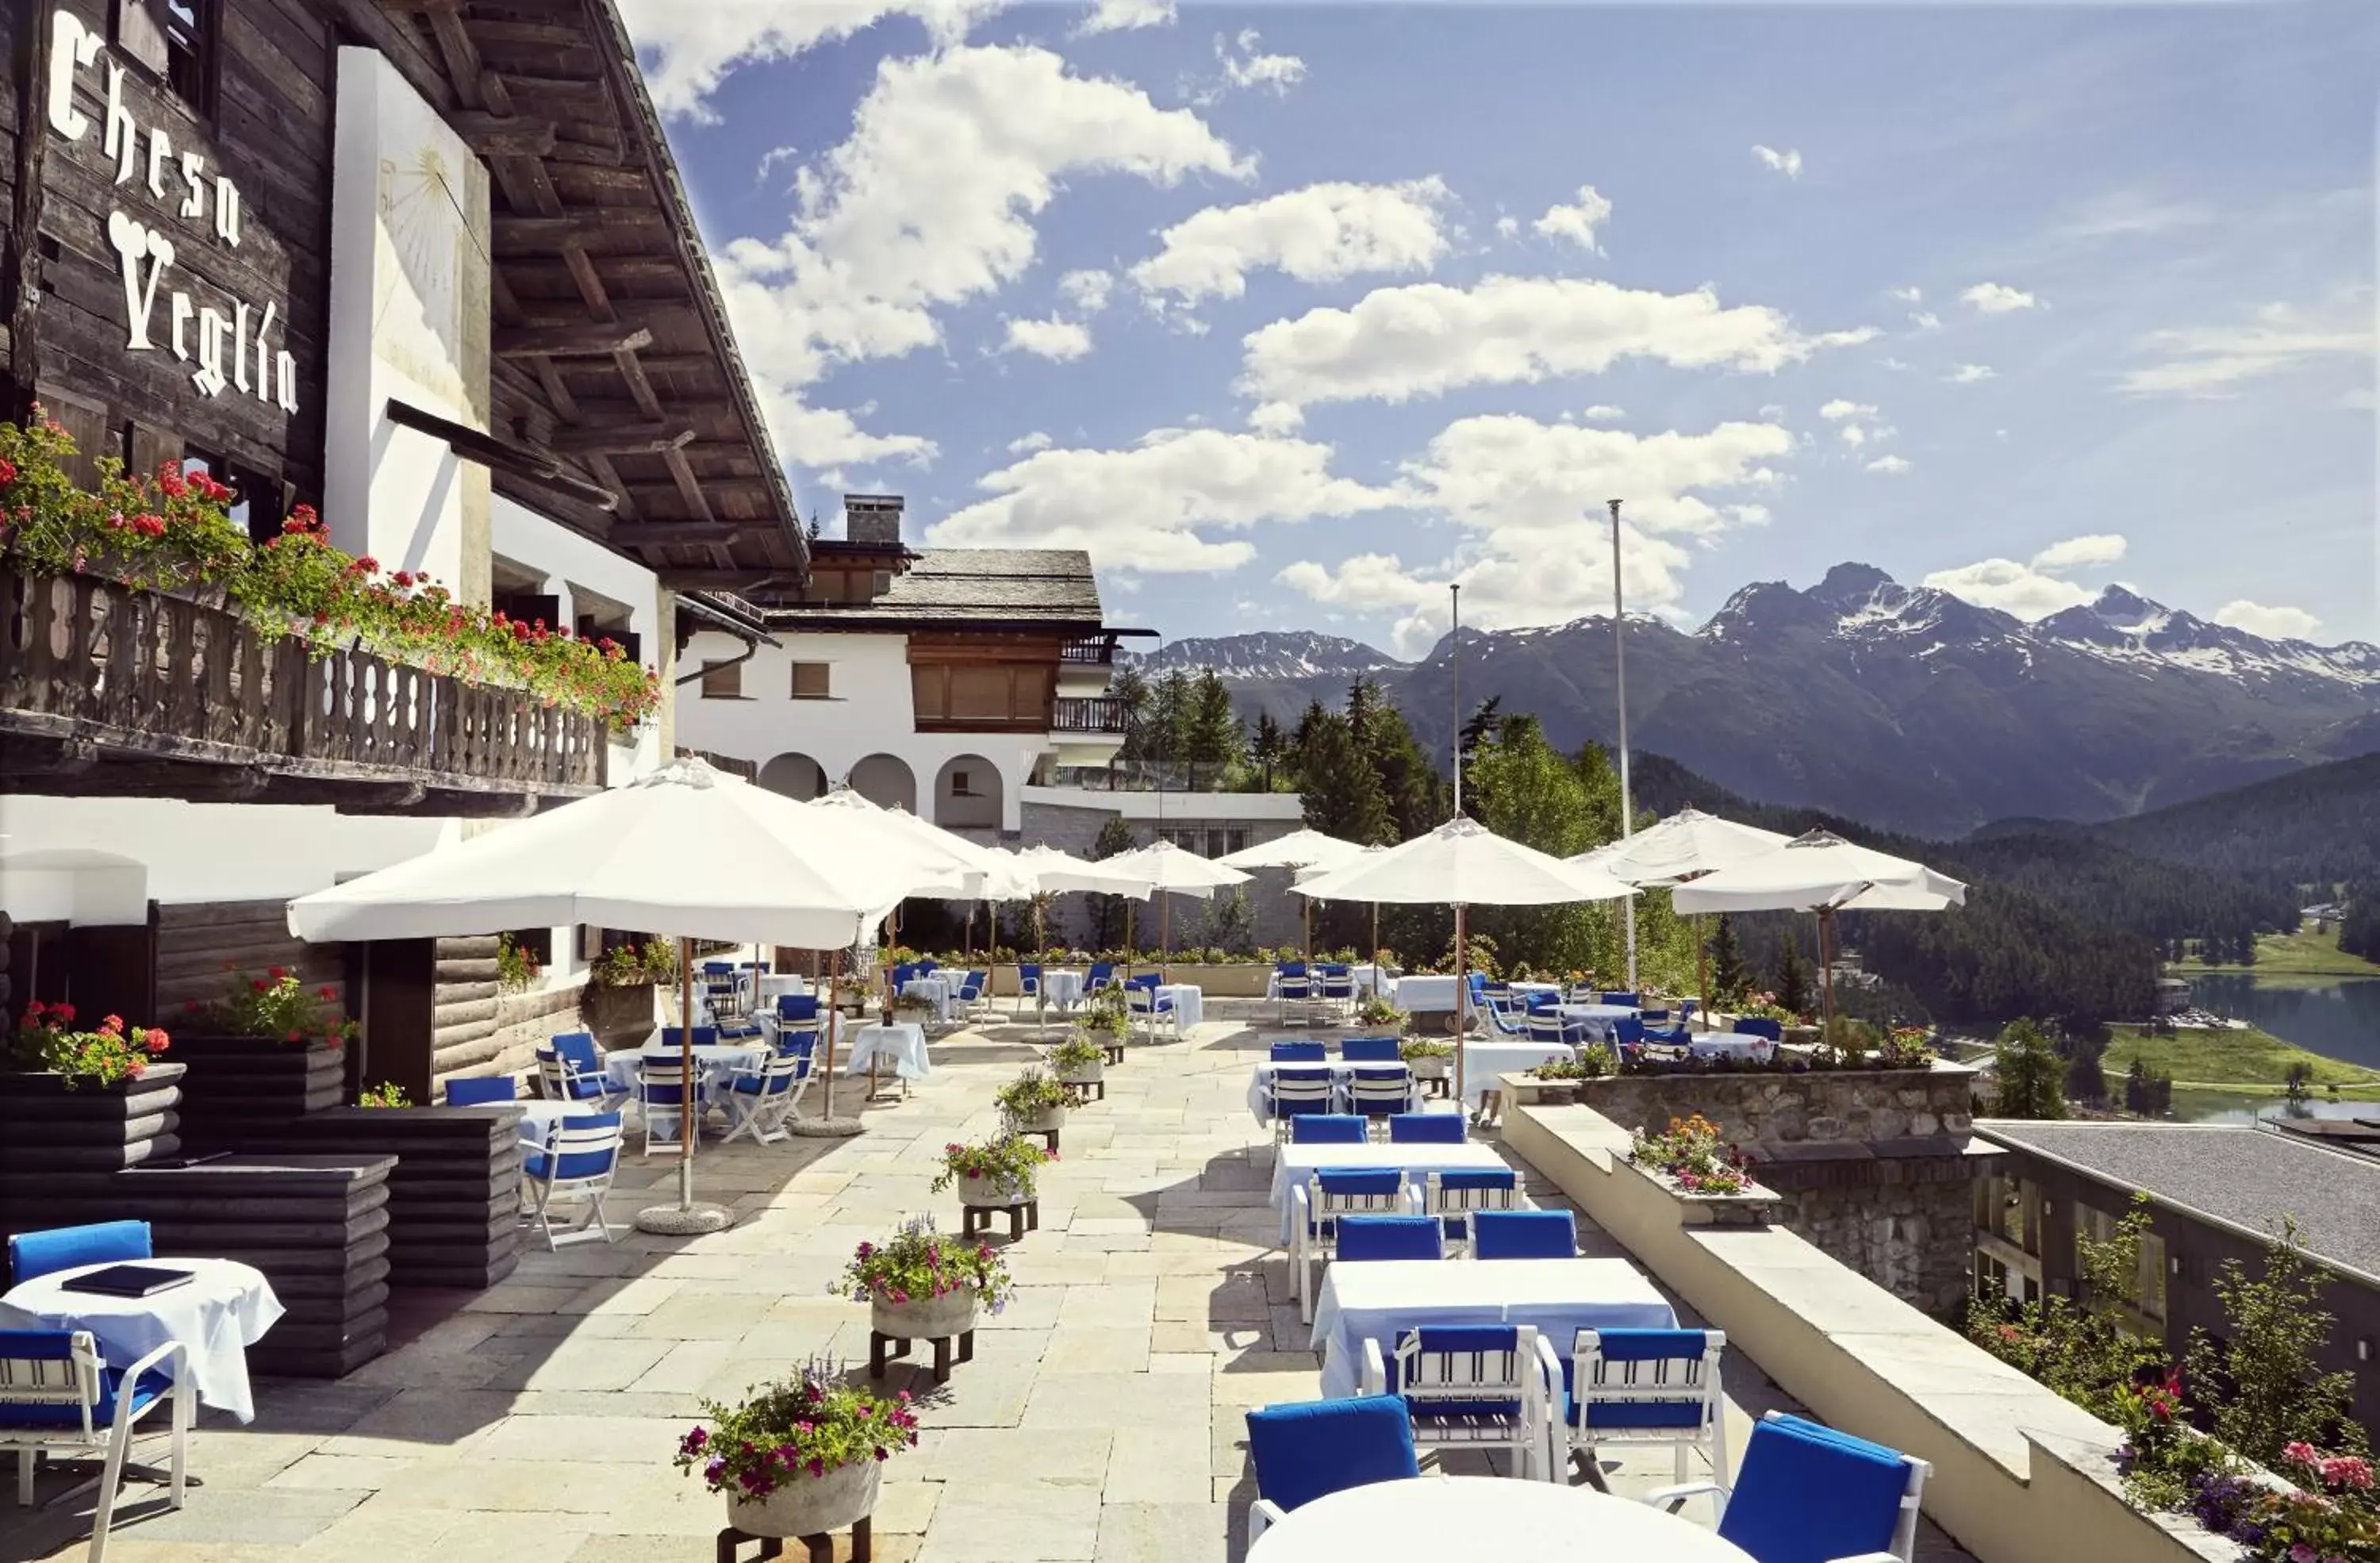 Balcony/Terrace, Swimming Pool in Badrutt's Palace Hotel St Moritz